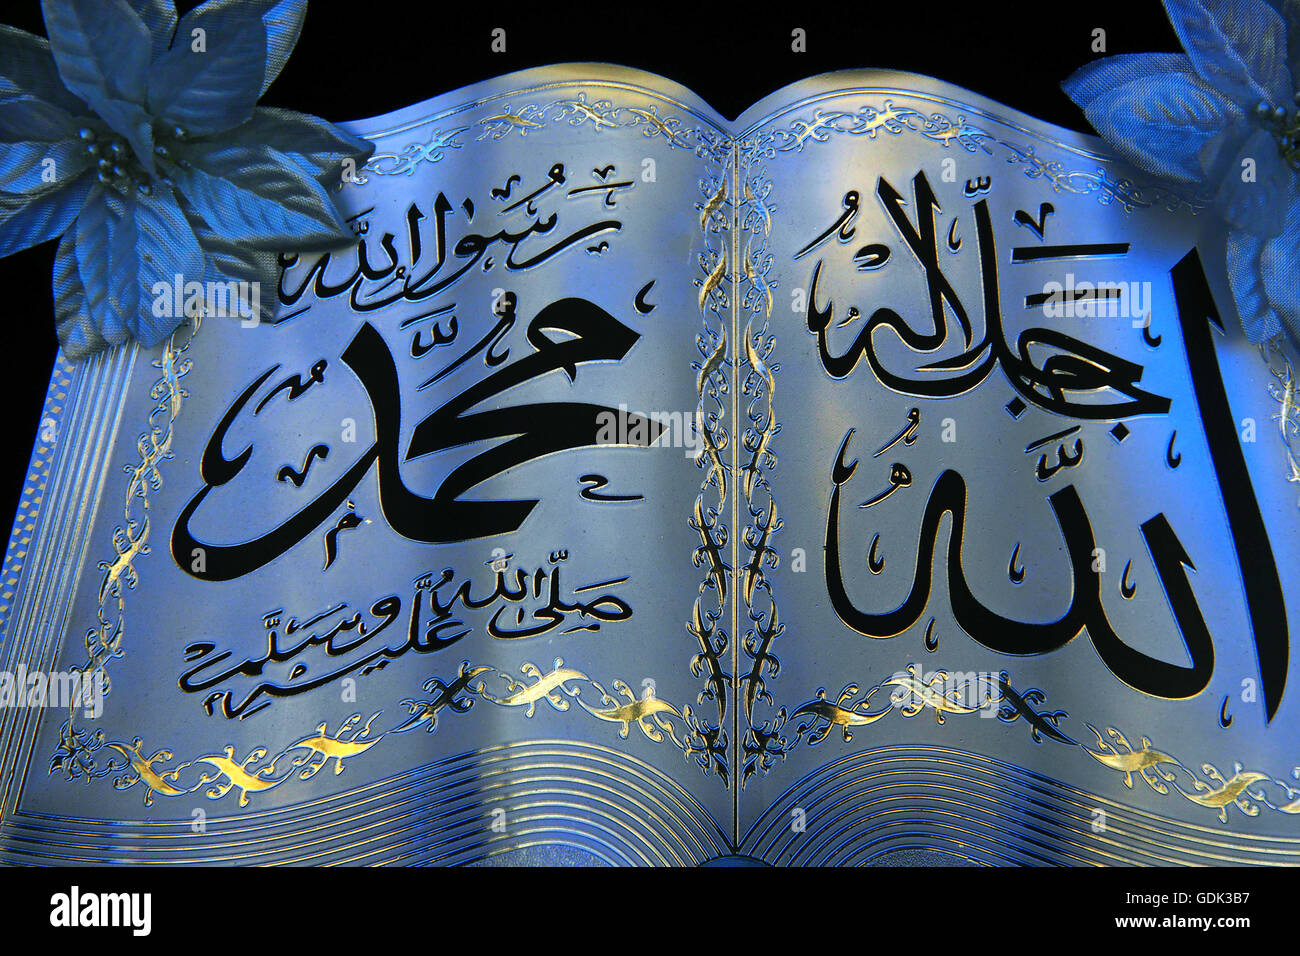 Detail des Heiligen Koran mit dem Namen Allah, auf einem Teller Dekoration,  Religion, Islam Stockfotografie - Alamy